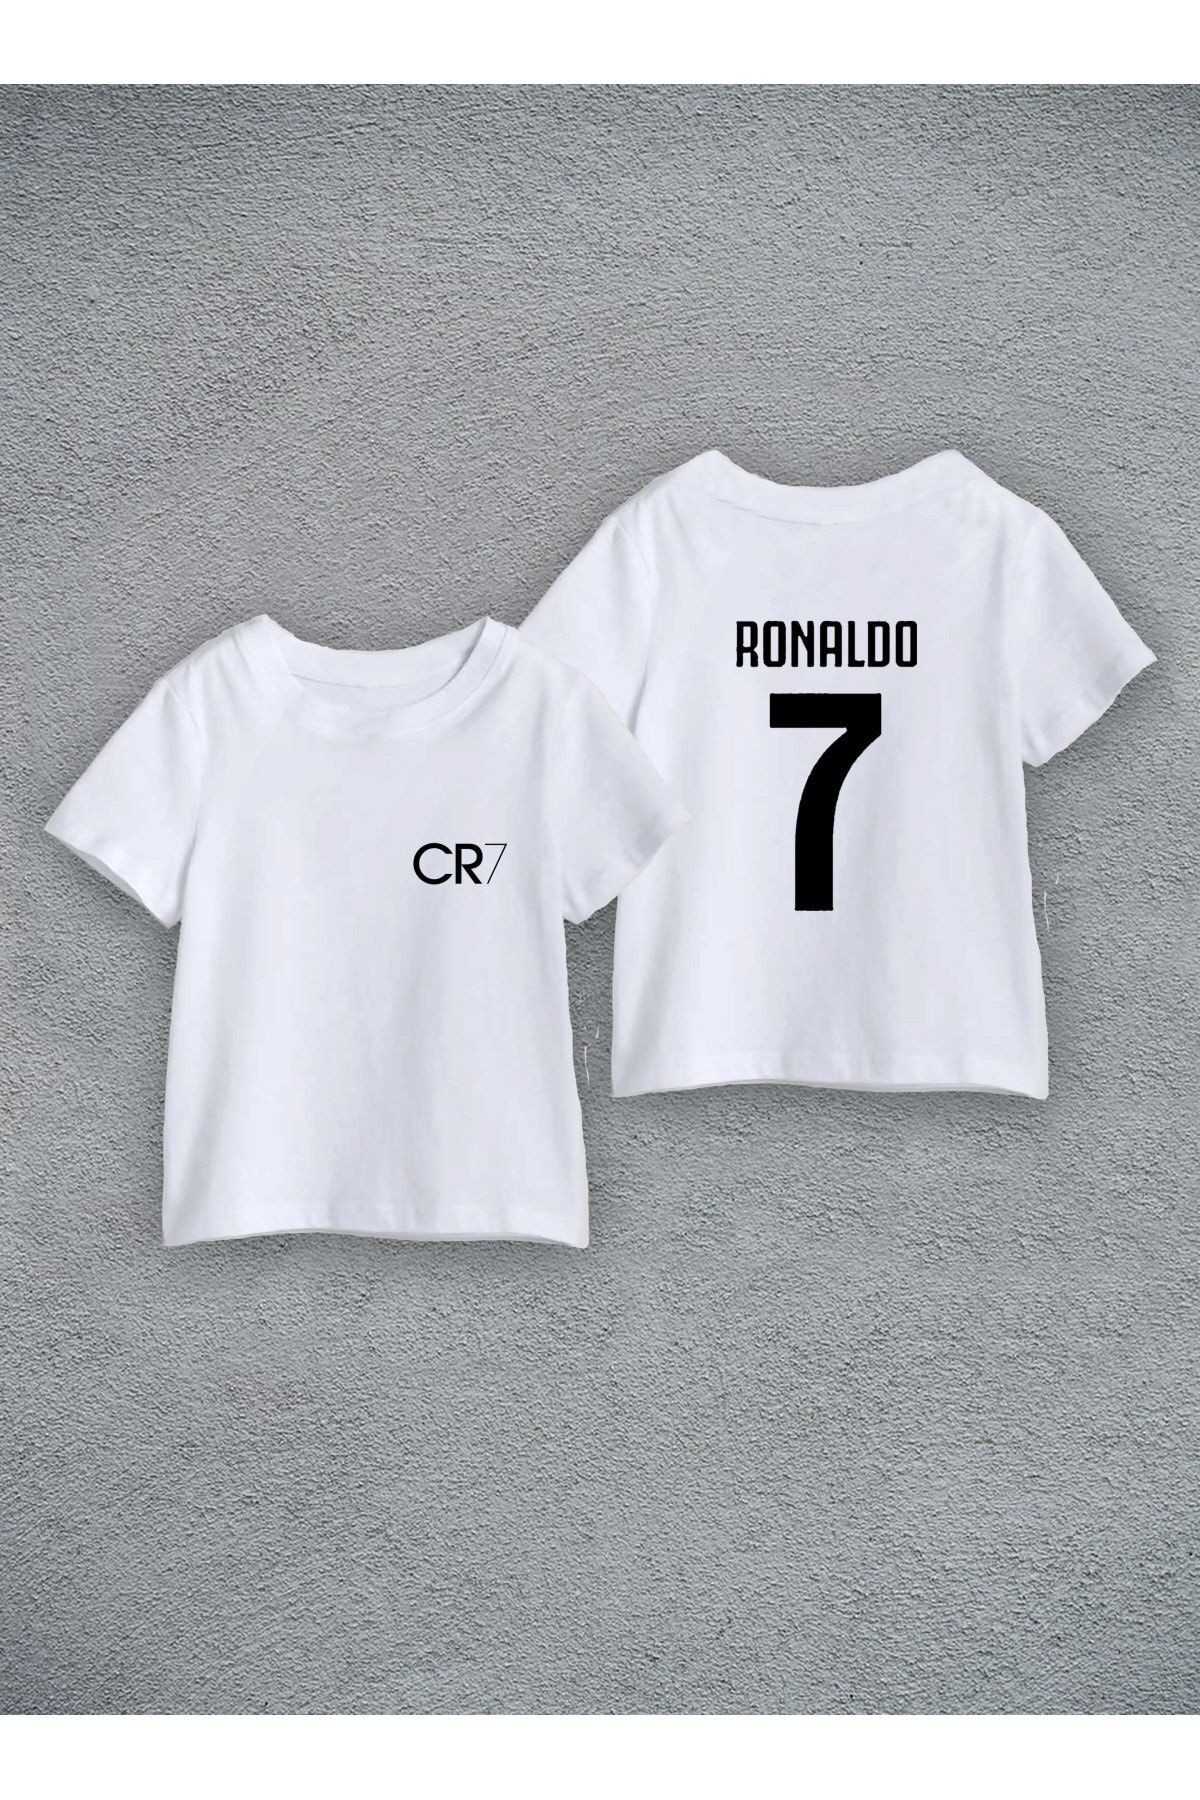 Darkia Cristiano Ronaldo Cr7 Ön Arka Özel Tasarım Baskılı Çocuk Tişört Forma